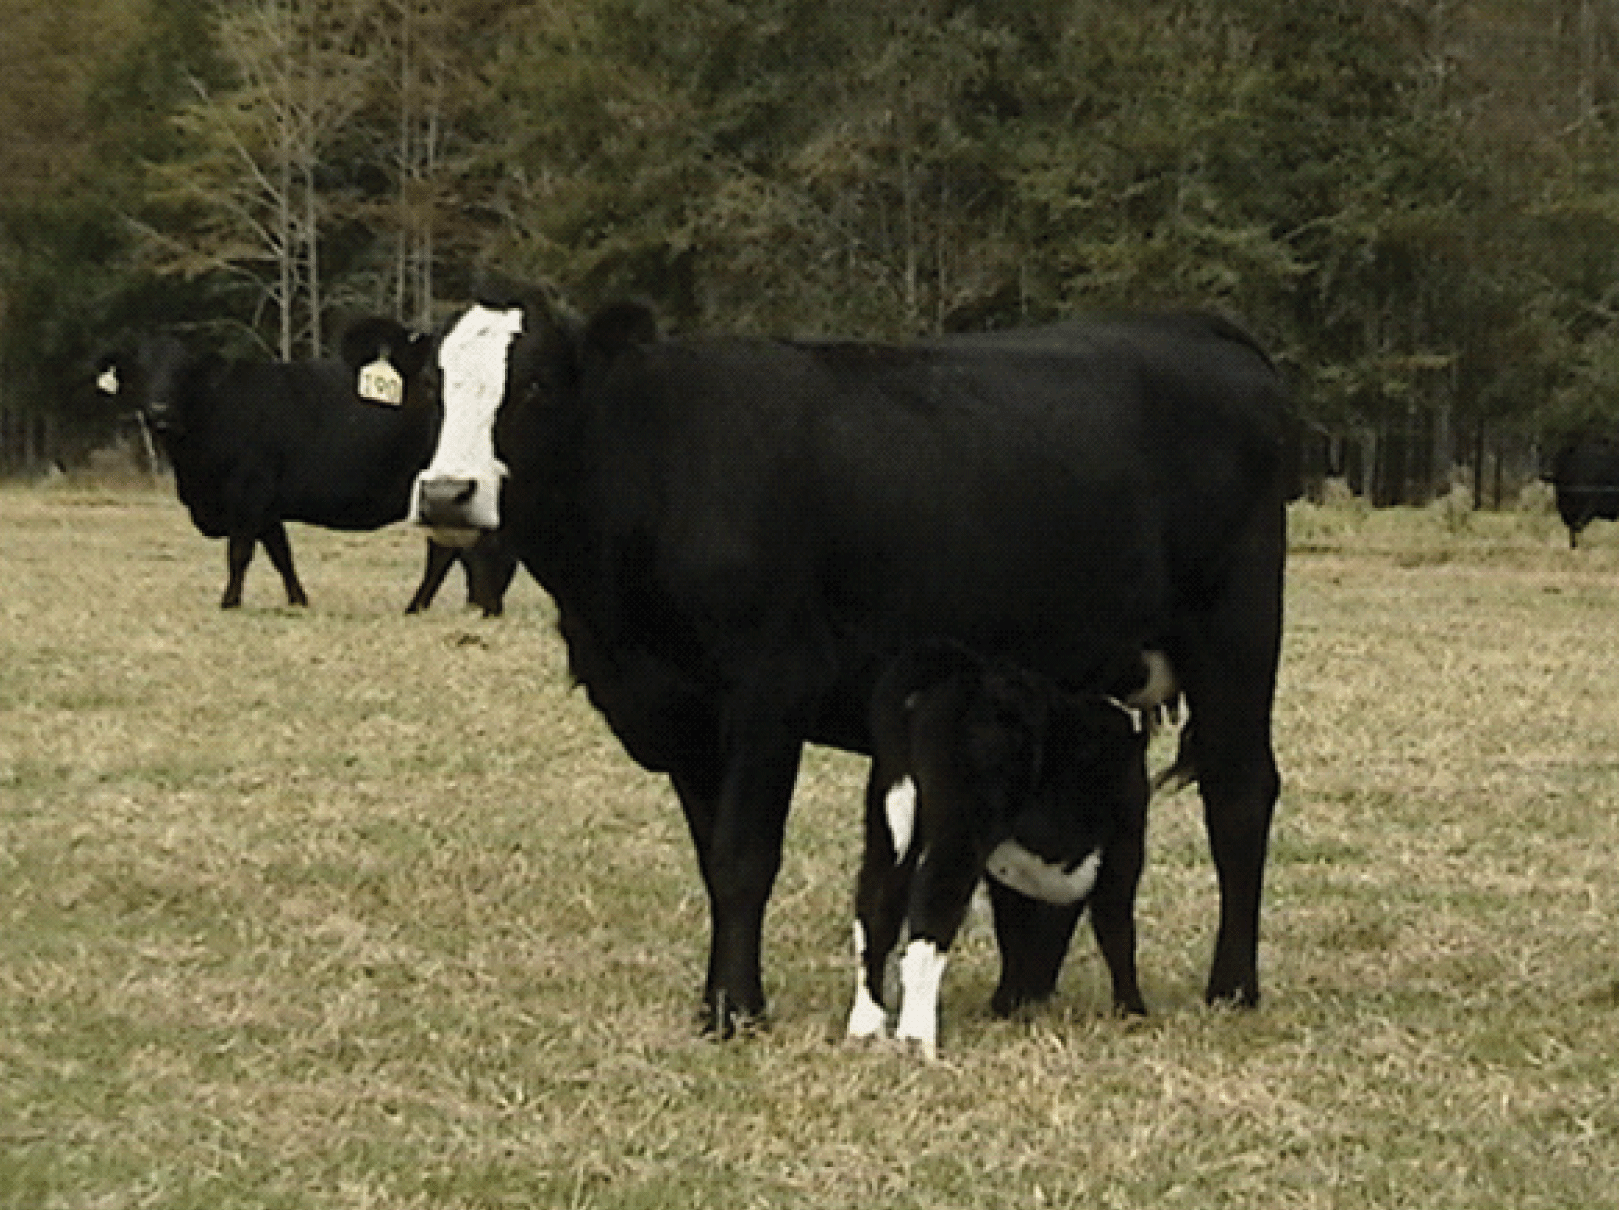 cow & calf